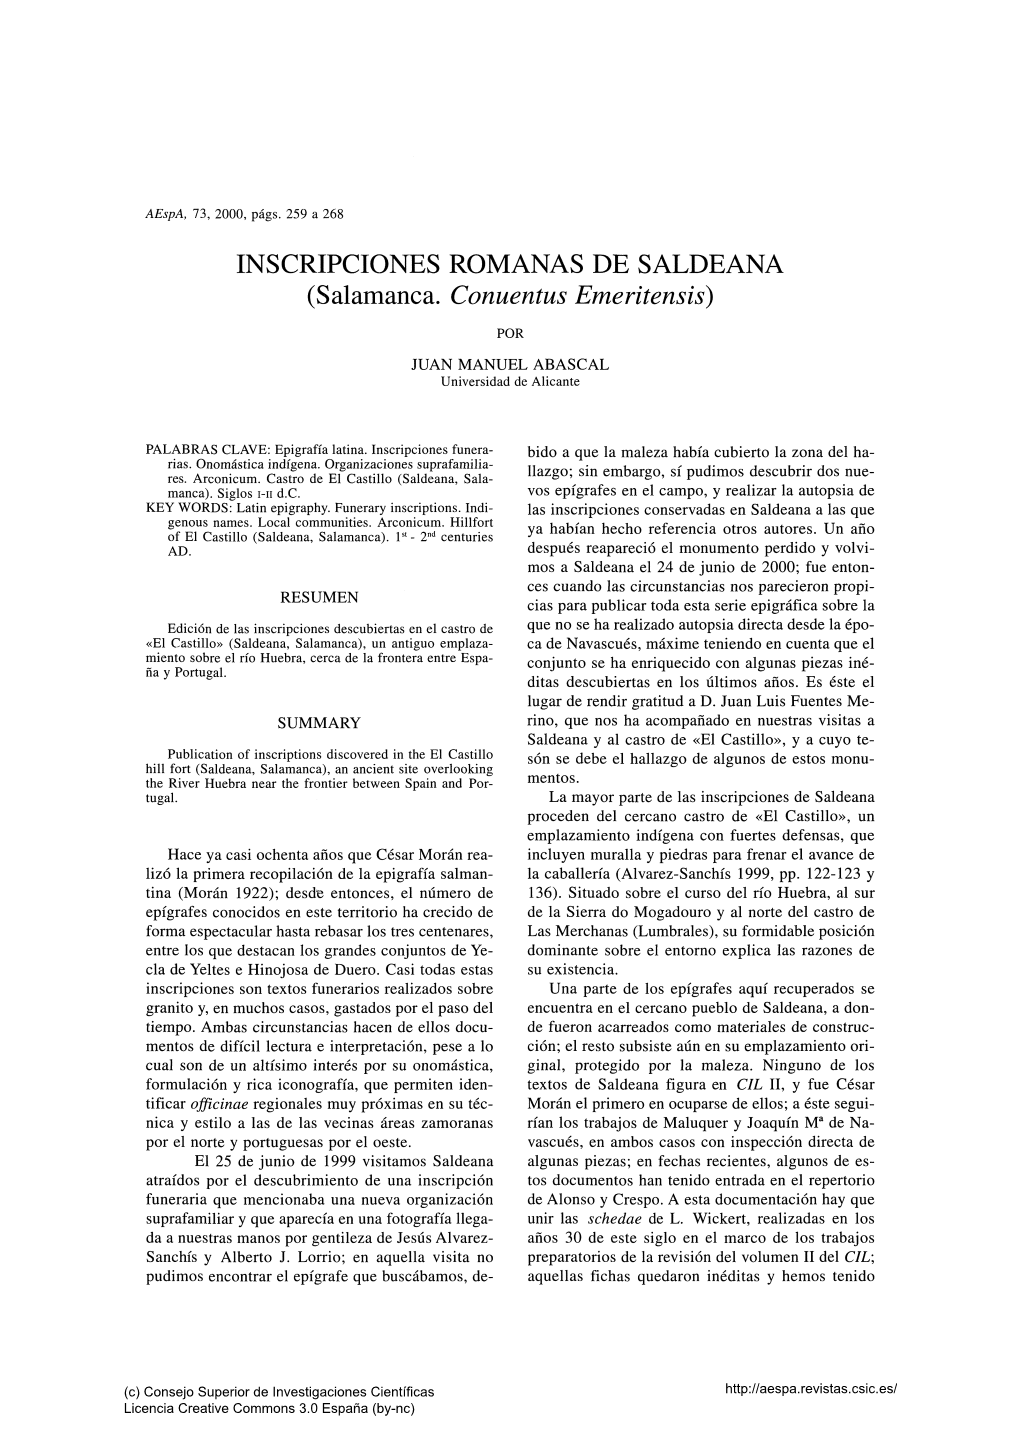 INSCRIPCIONES ROMANAS DE SALDEANA (Salamanca